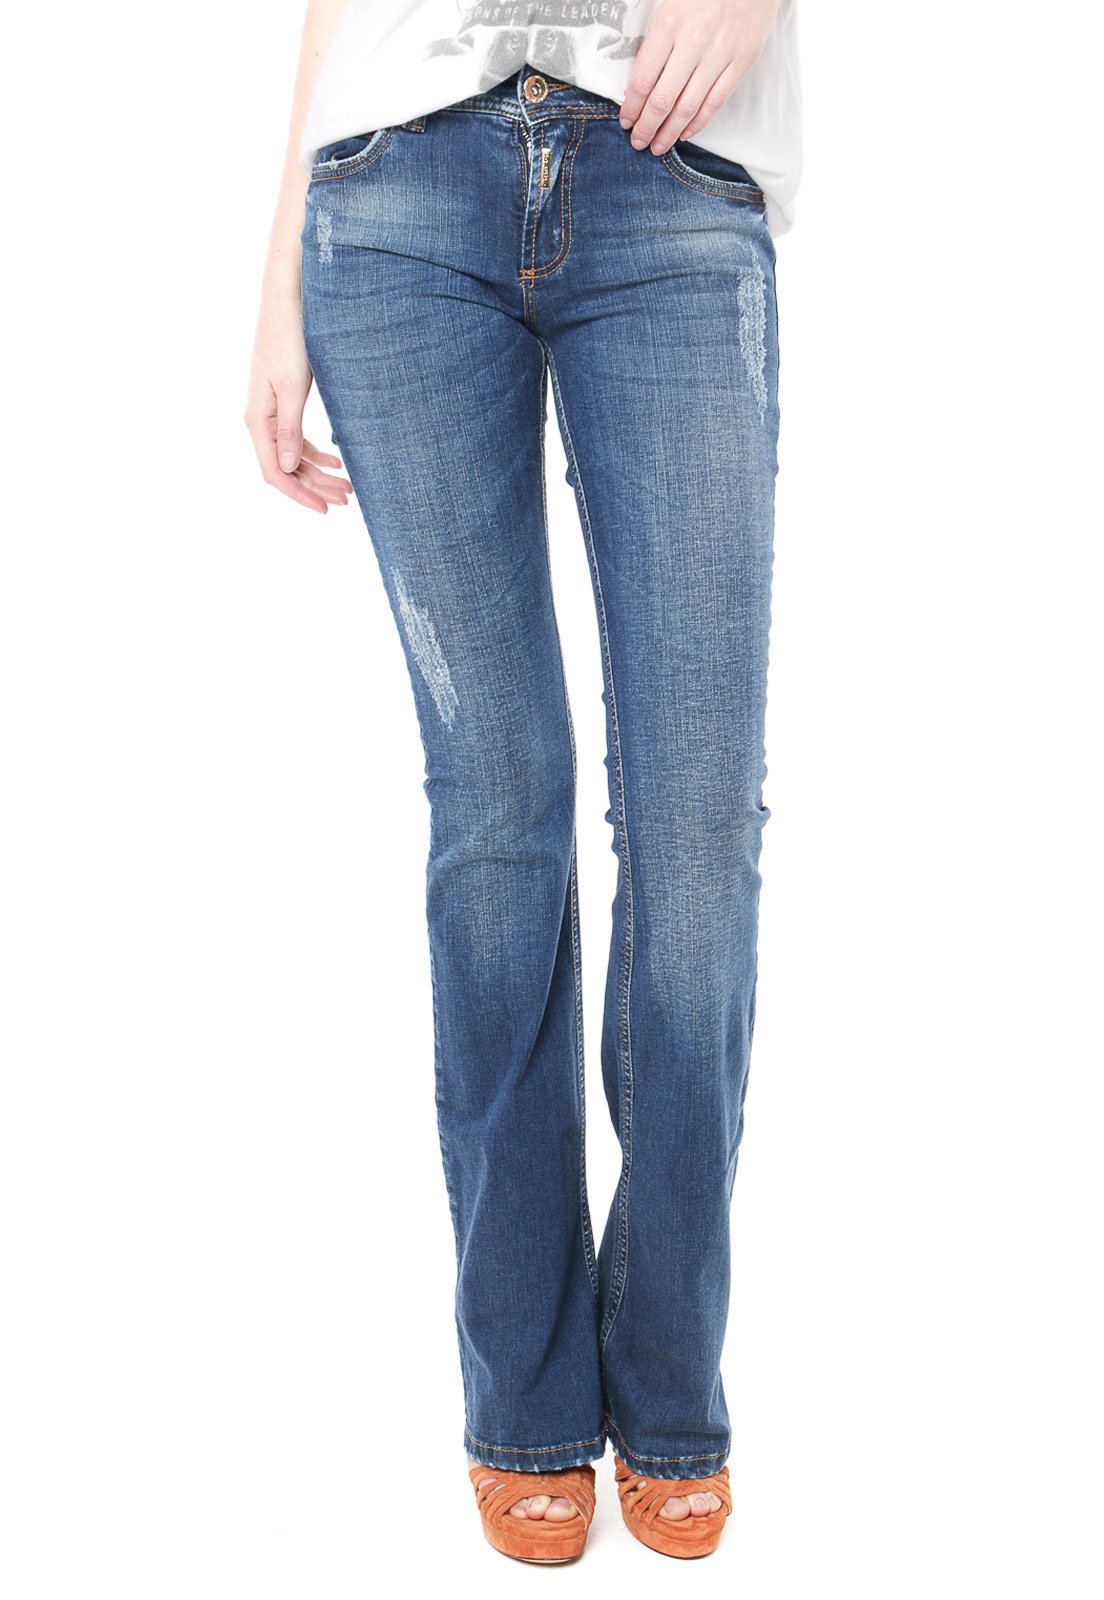 dafiti calça jeans feminina colcci